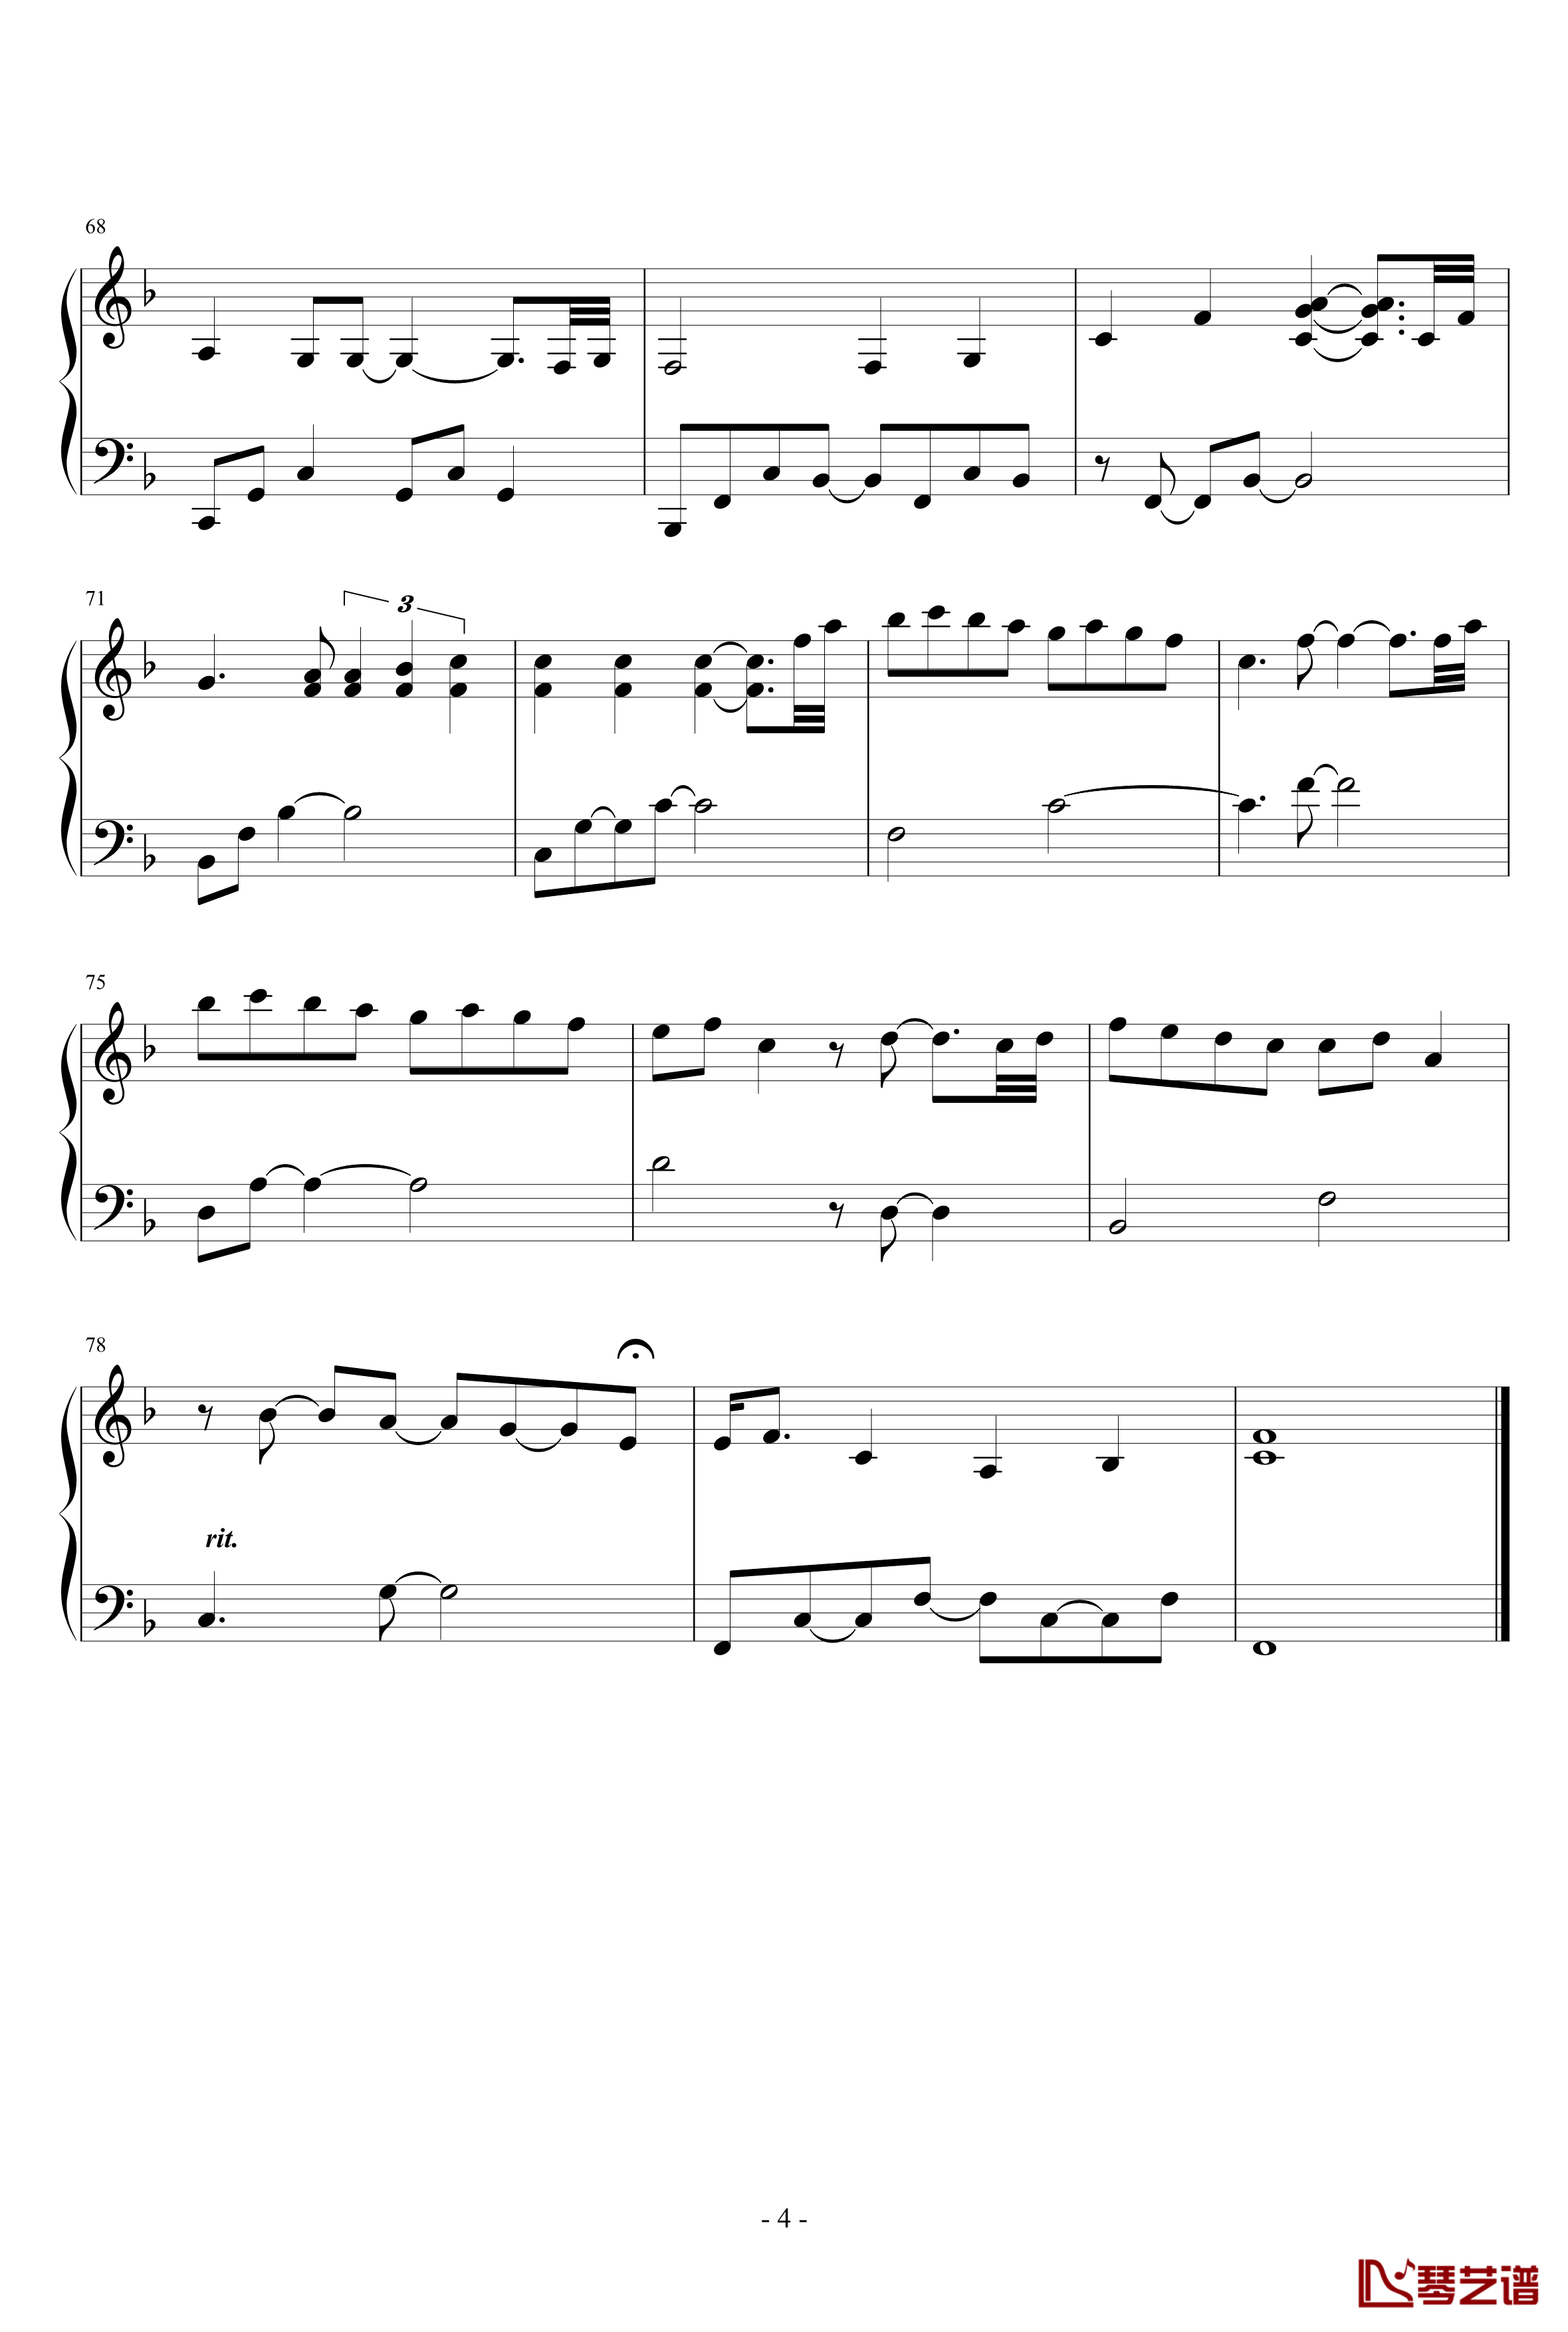 peacin out钢琴谱-REASONER4